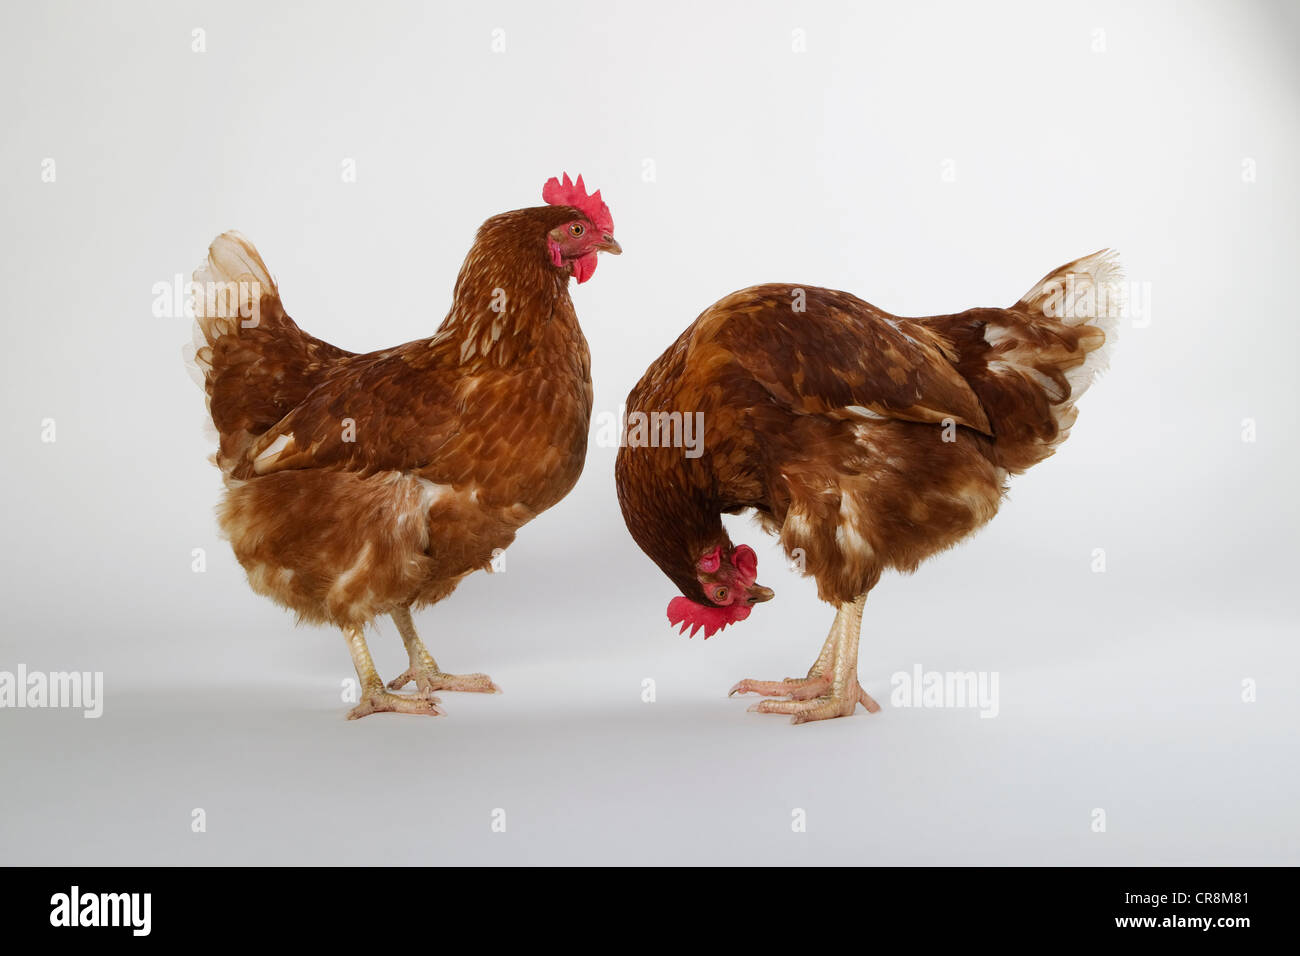 Deux poules, studio shot Banque D'Images